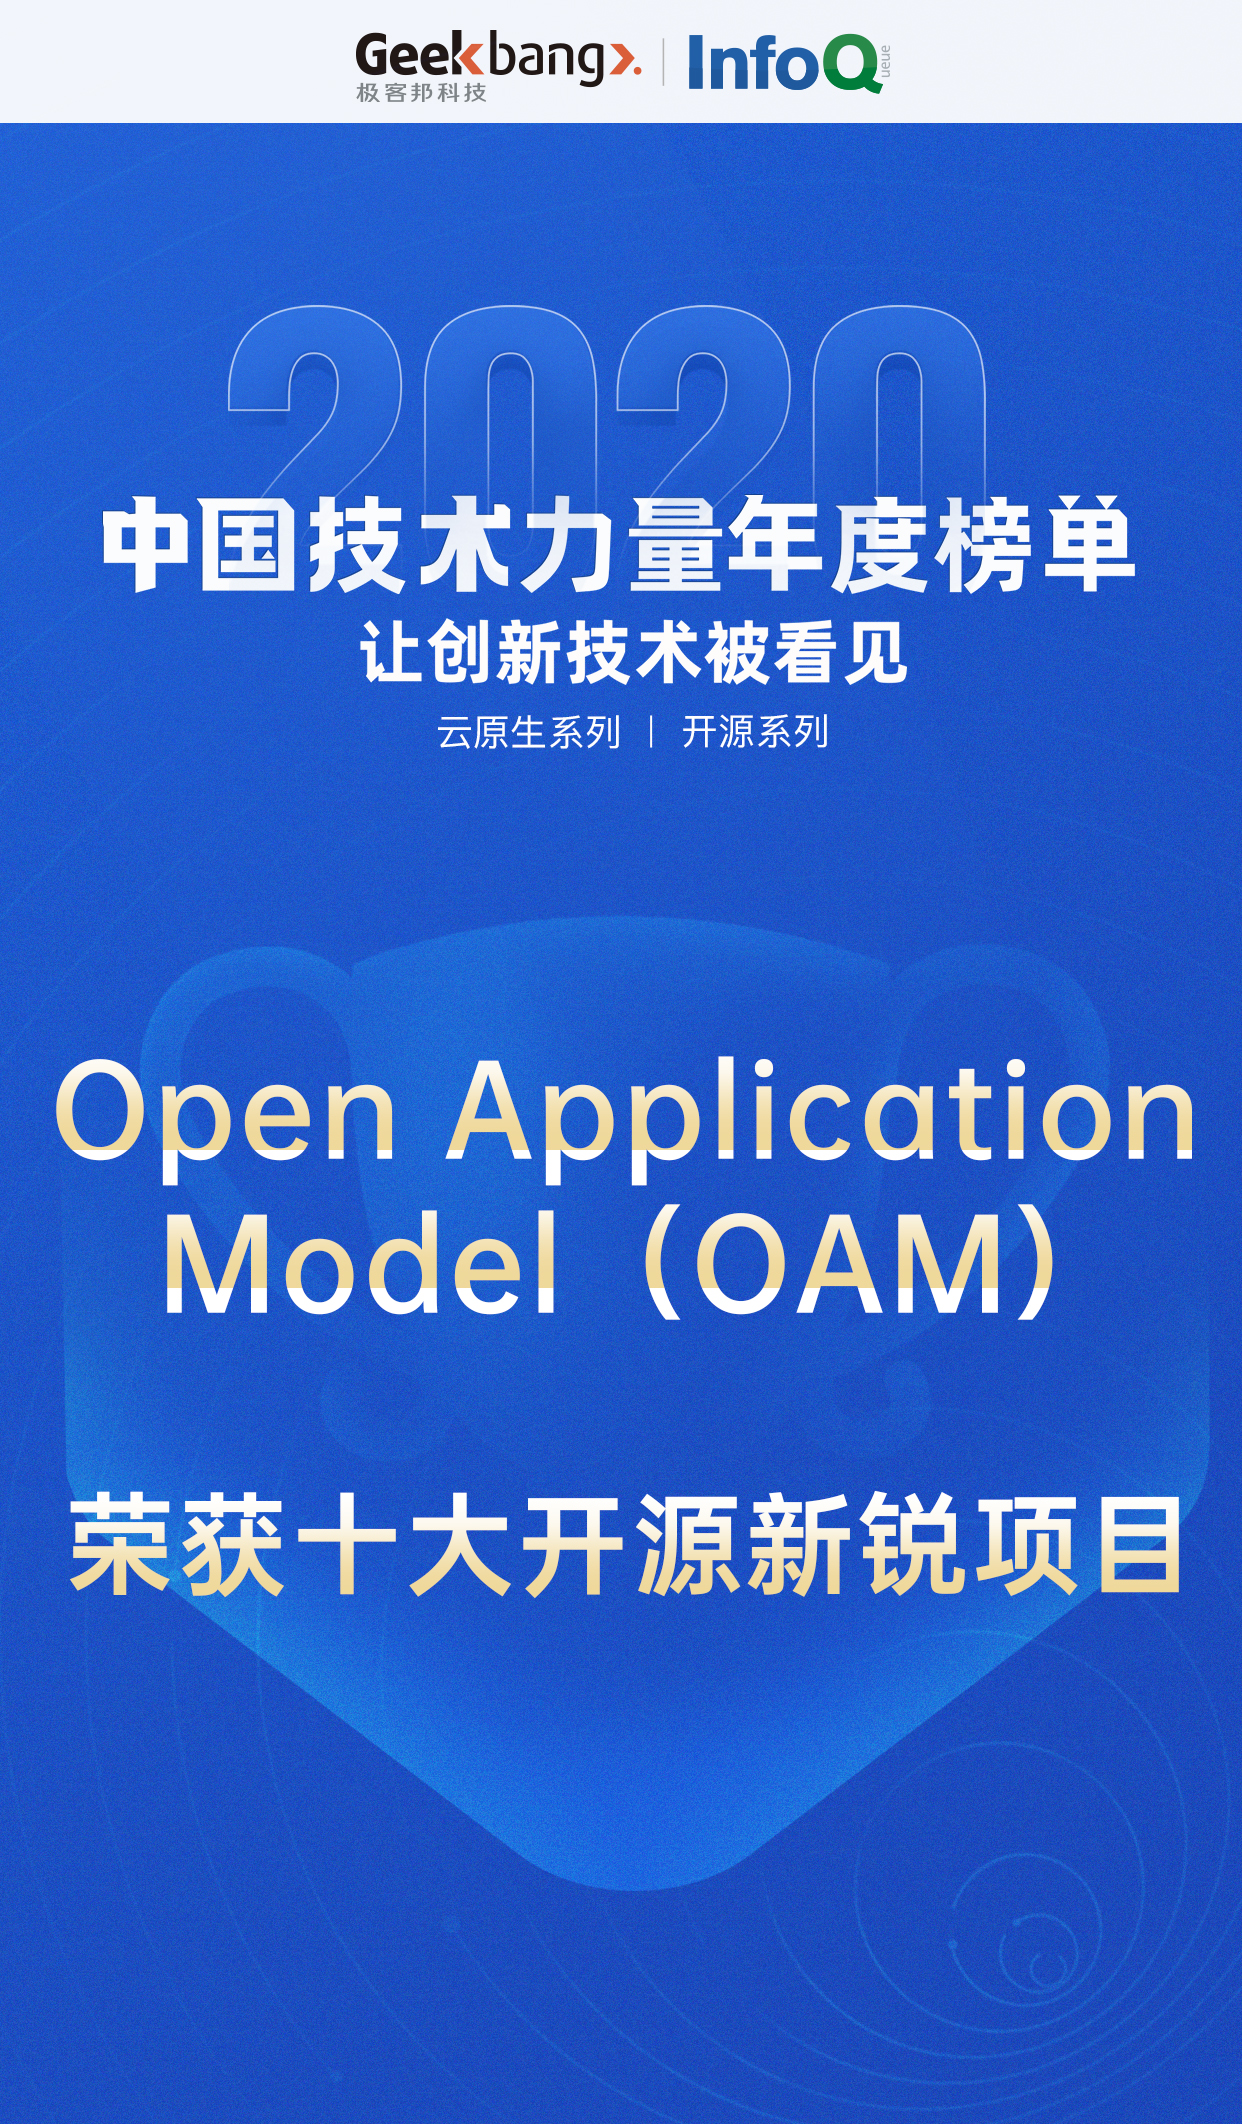  阿里云 OAM 入选「2020中国技术力量年度榜单」，定义云原生应用交付标准